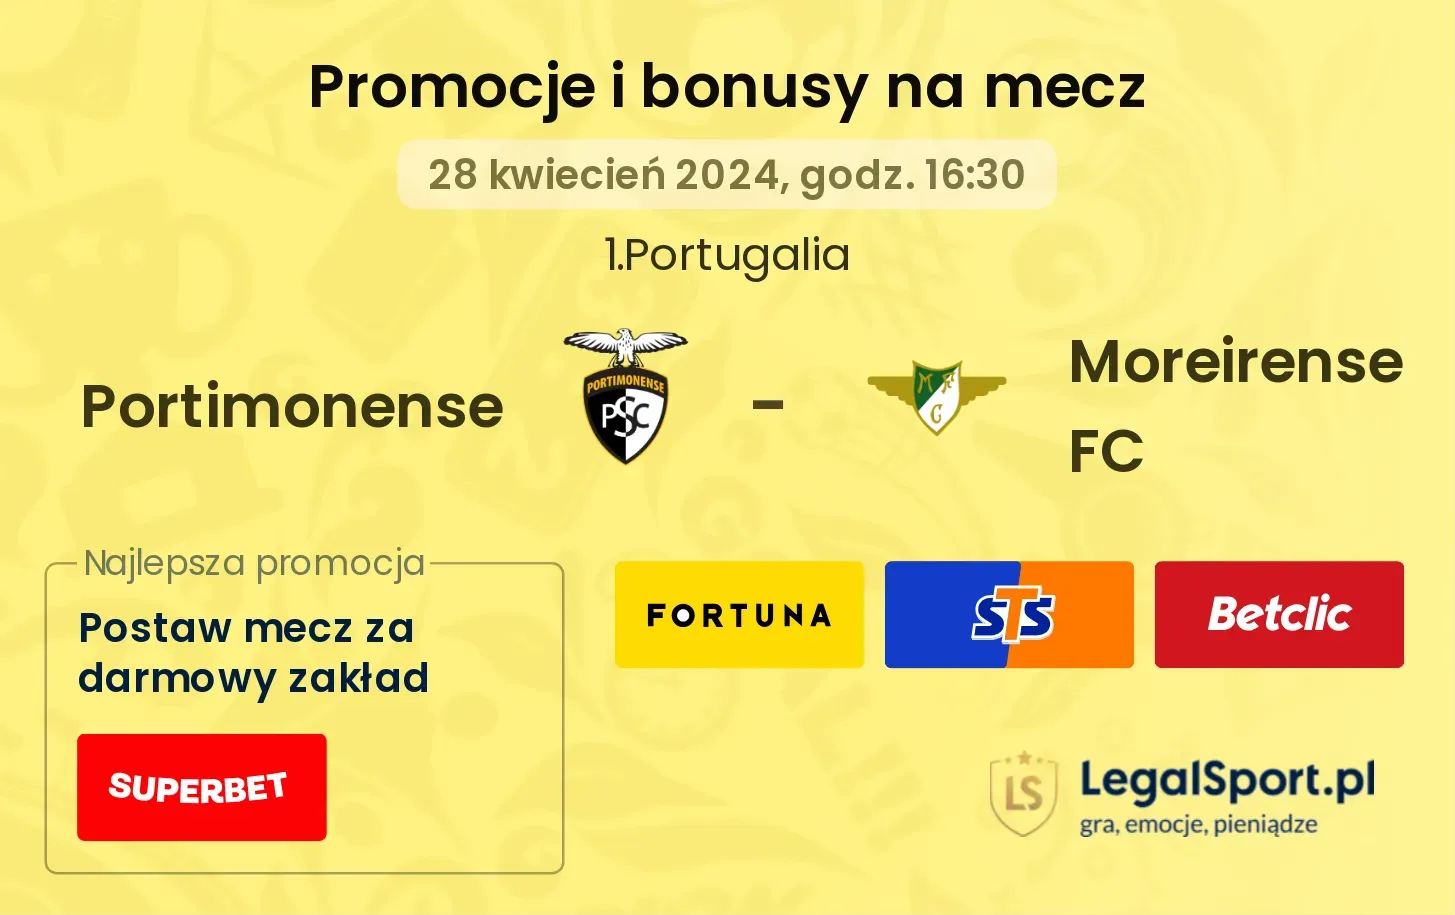 Portimonense - Moreirense FC promocje bonusy na mecz